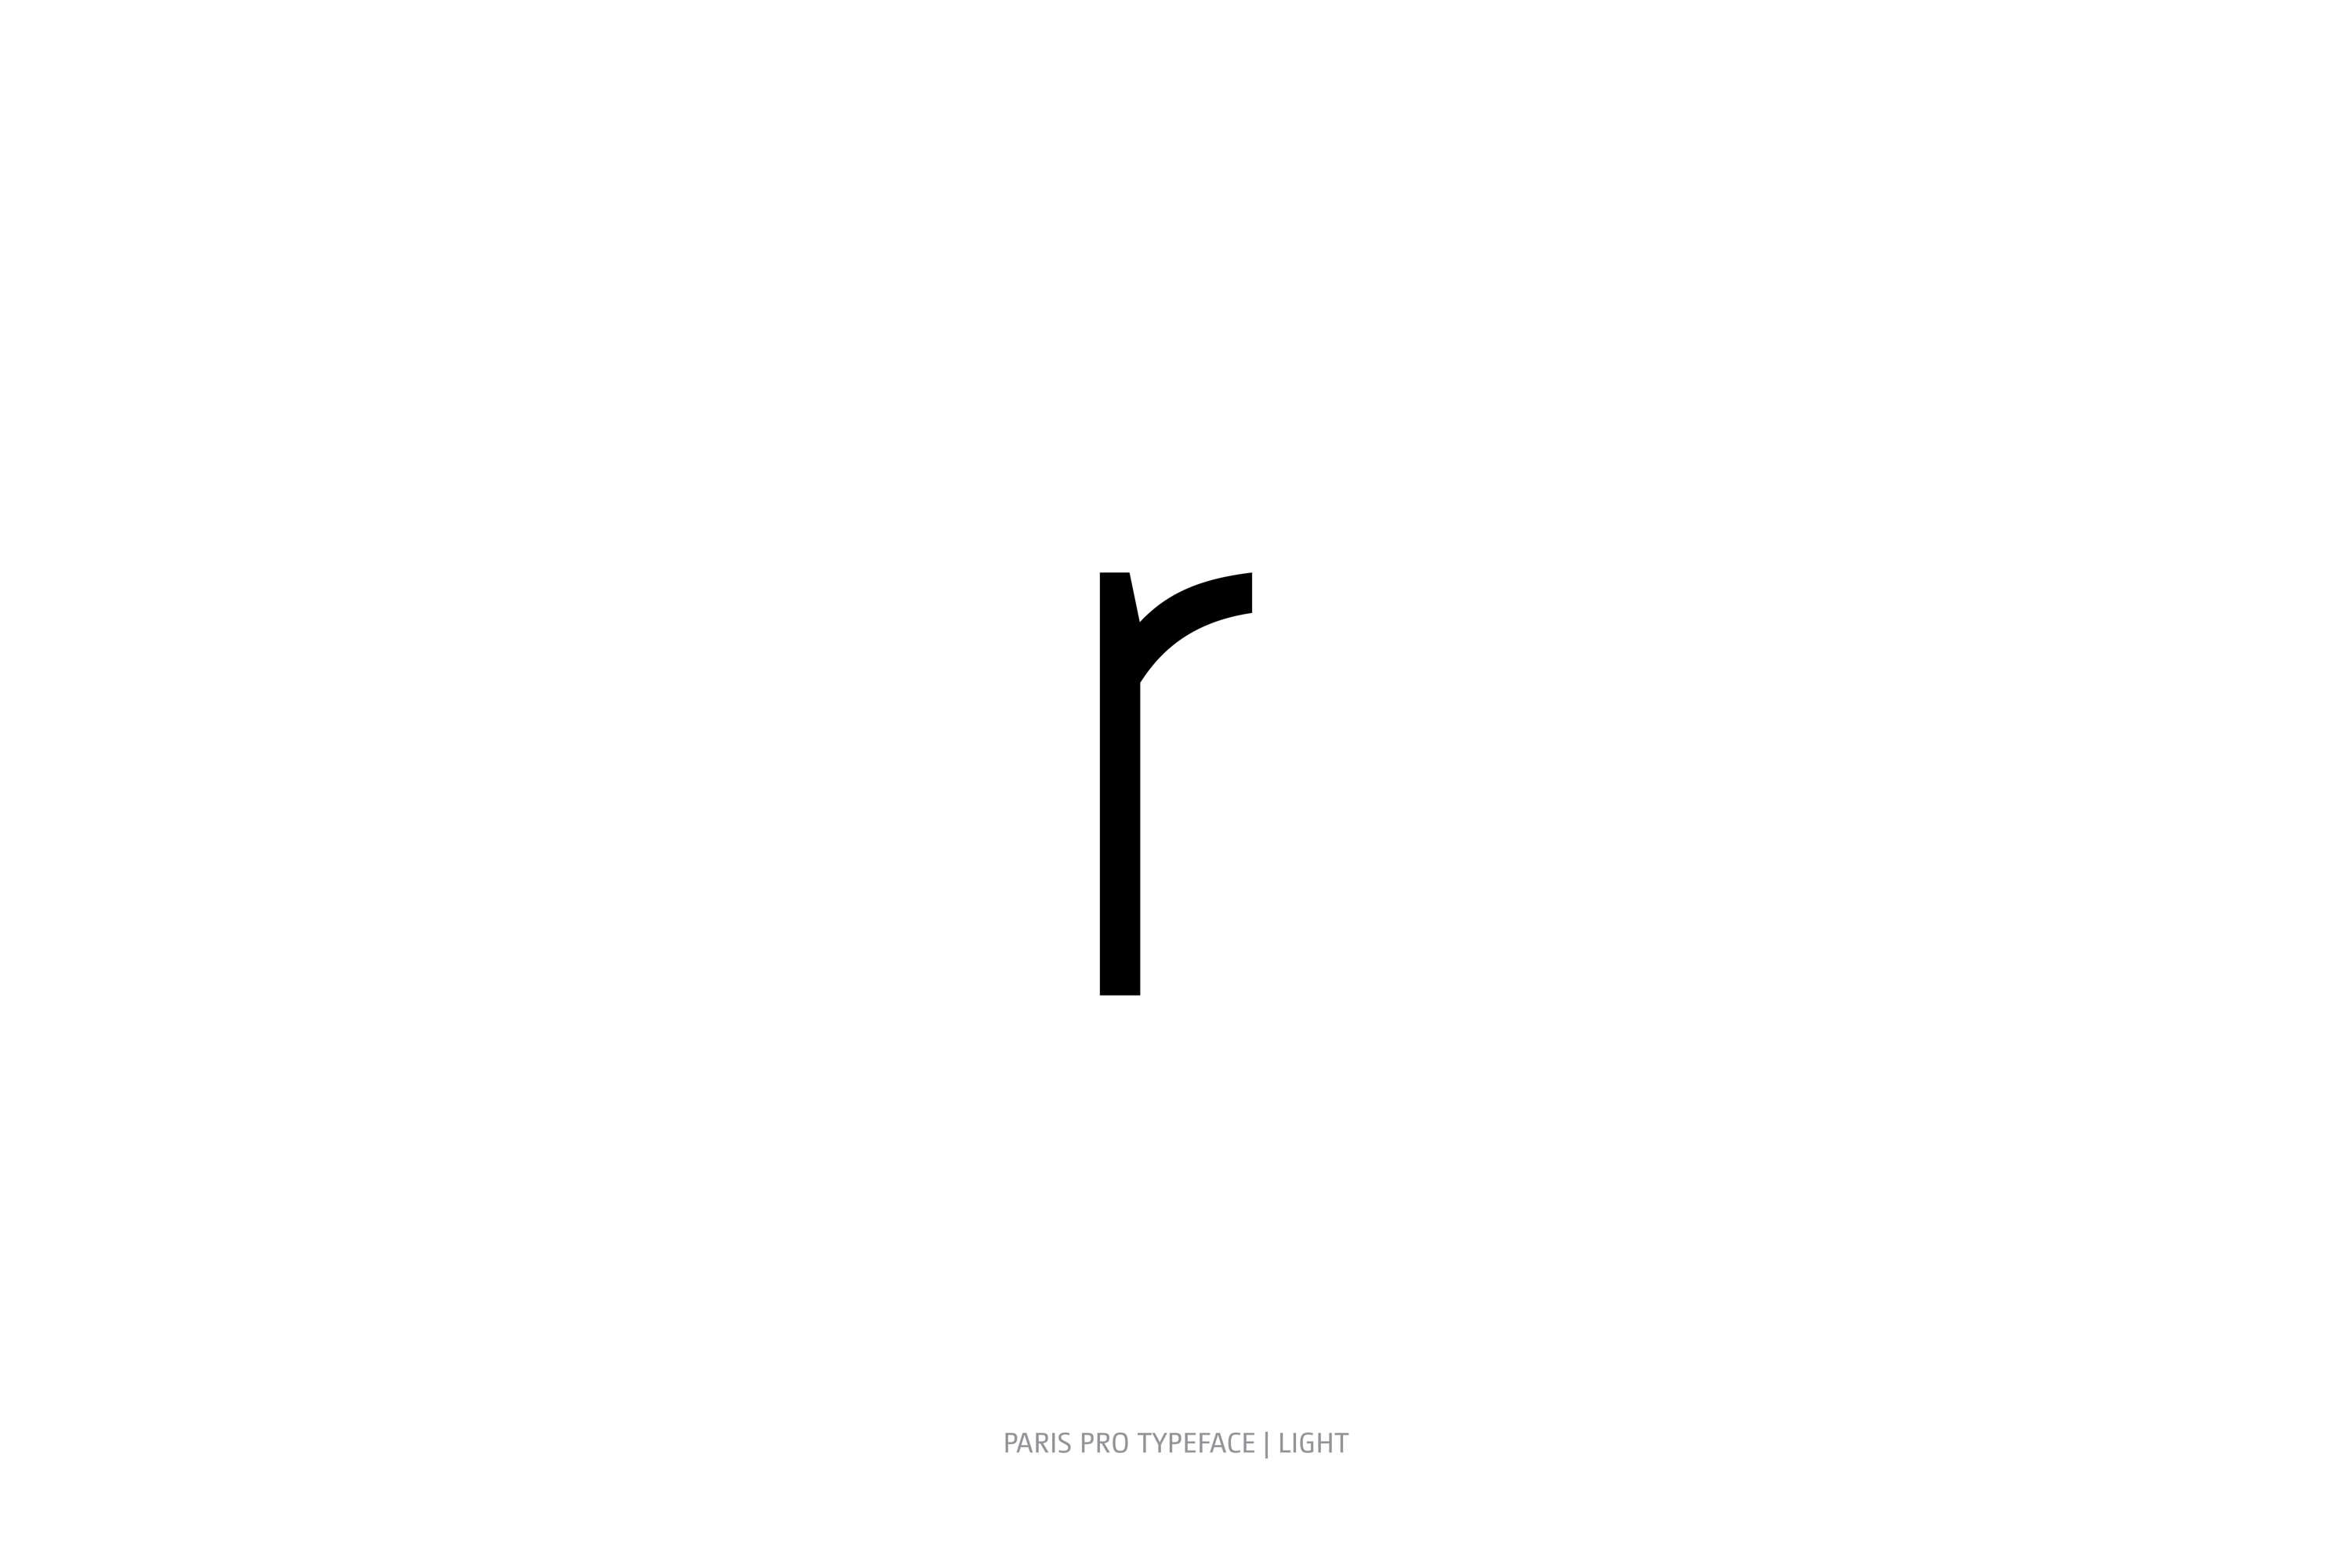 Paris Pro Typeface Light Style r